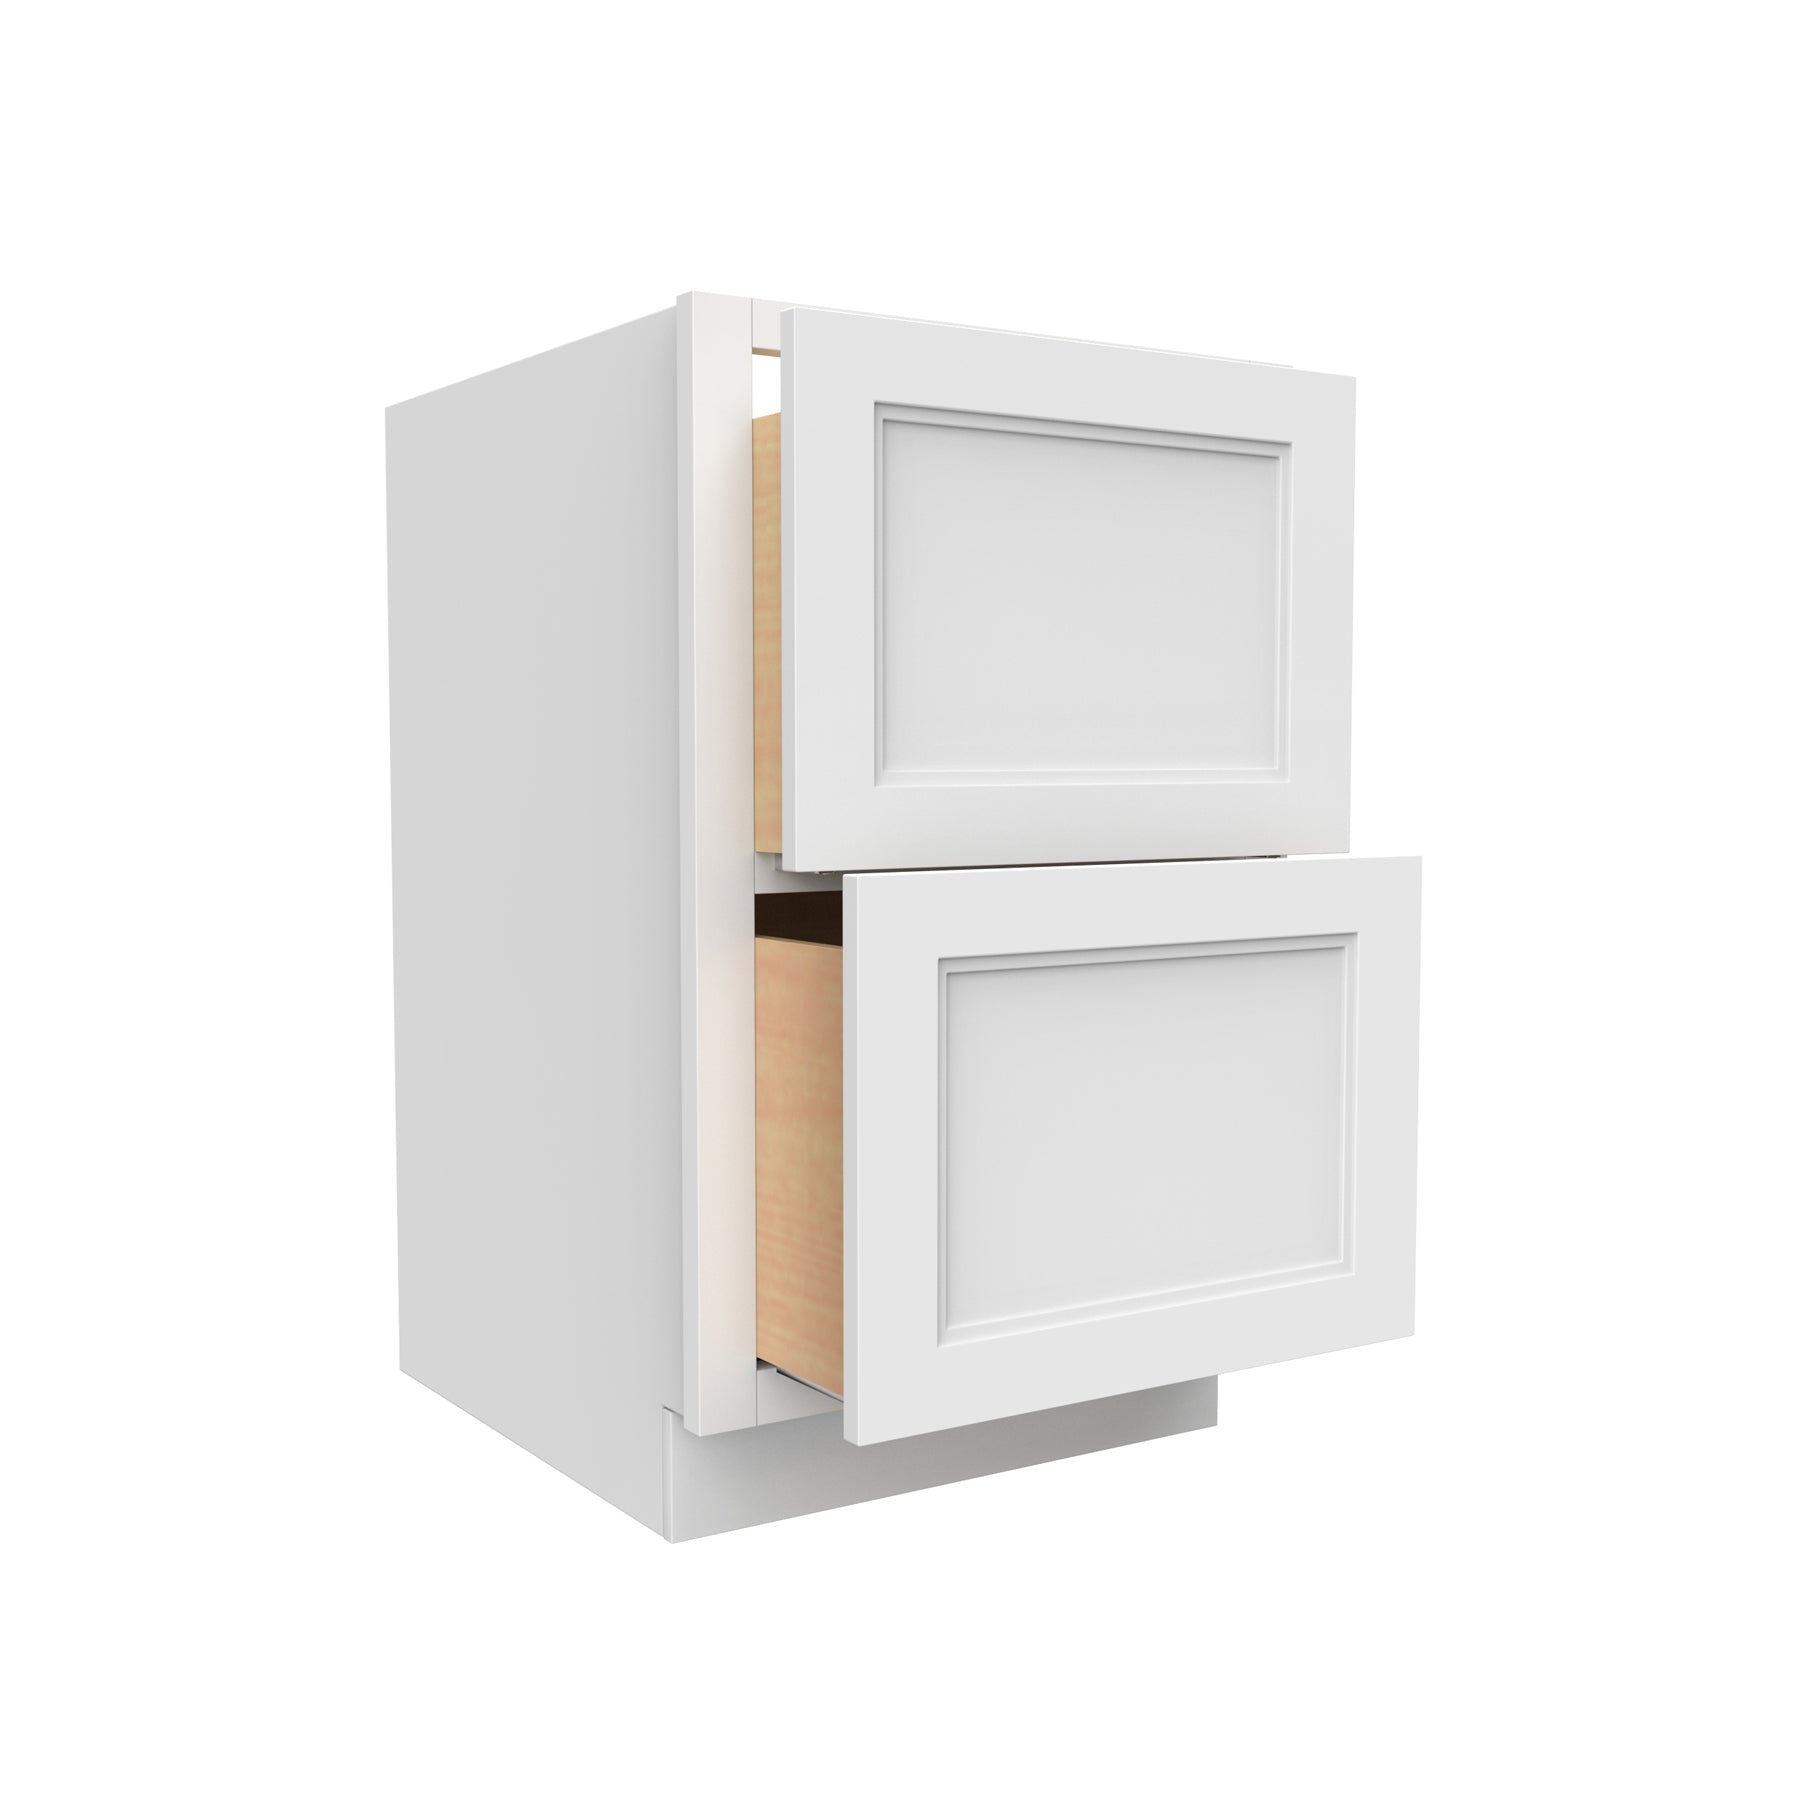 Fashion White - 2 Drawer Base Cabinet | 30"W x 34.5"H x 24"D